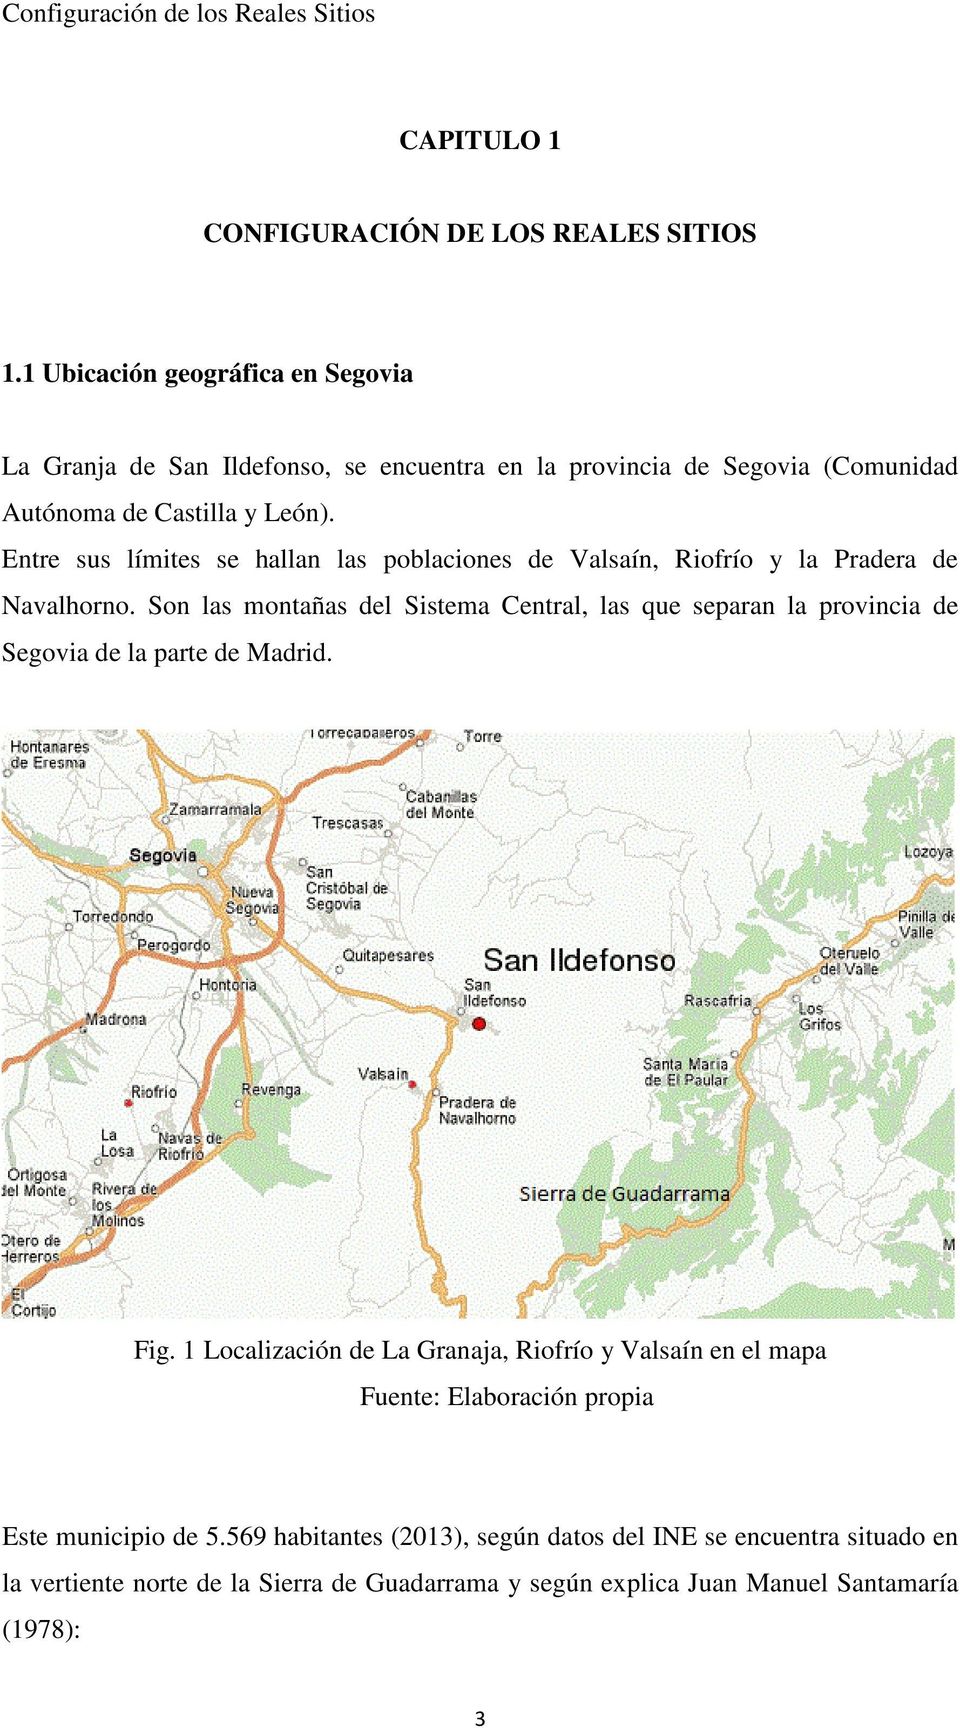 Entre sus límites se hallan las poblaciones de Valsaín, Riofrío y la Pradera de Navalhorno.